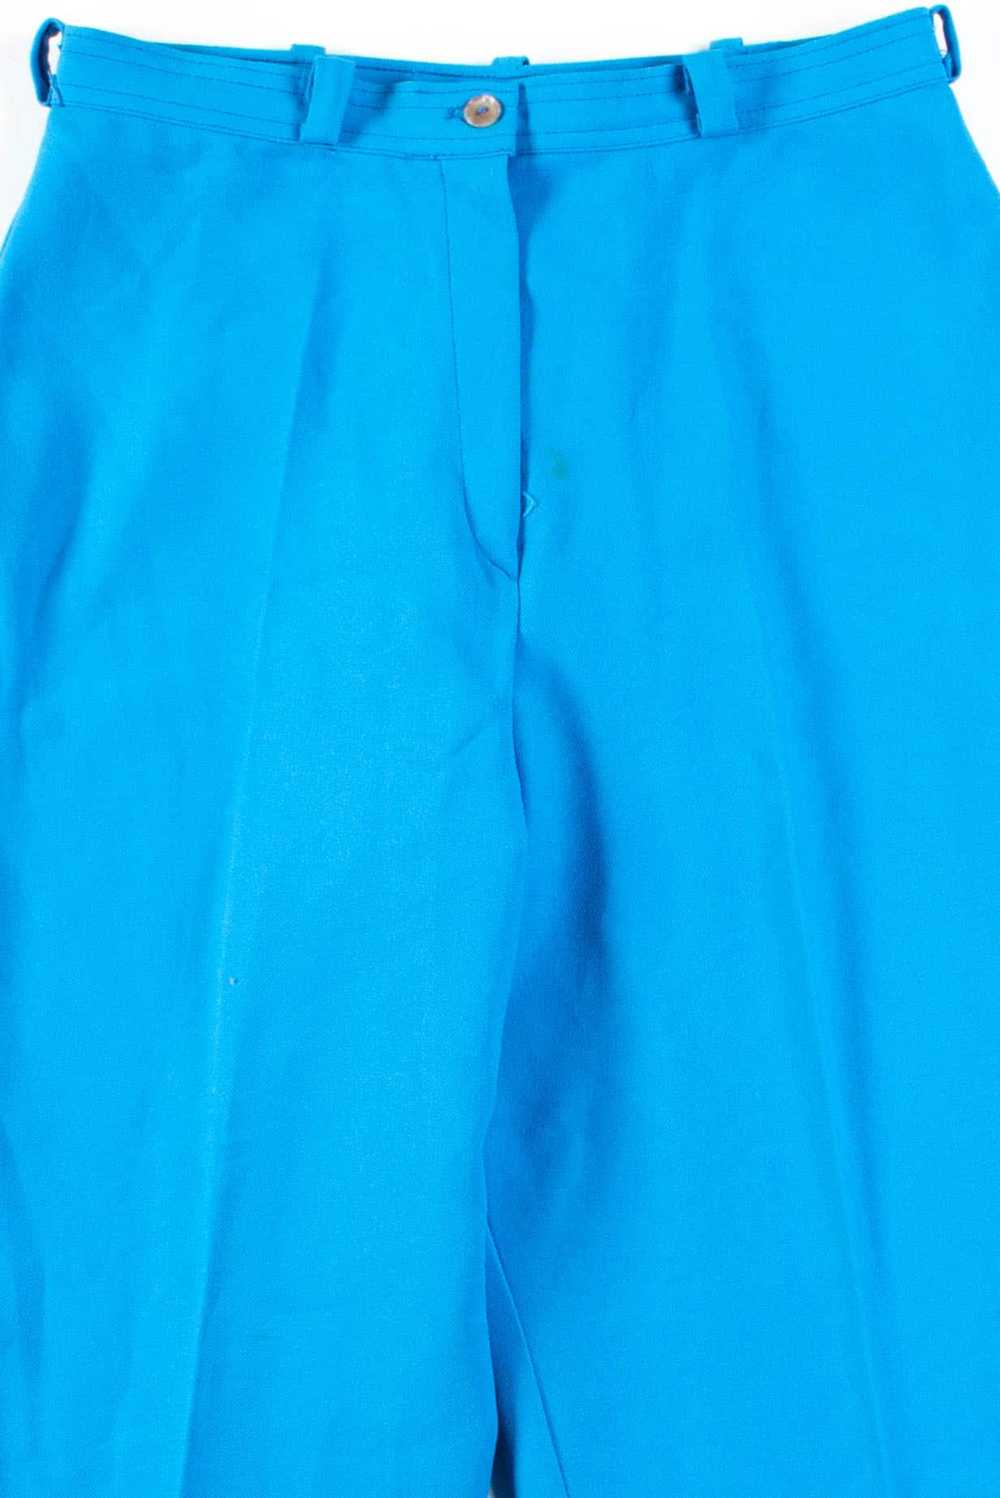 Light Blue Vintage Pants (sz. 14) - image 3